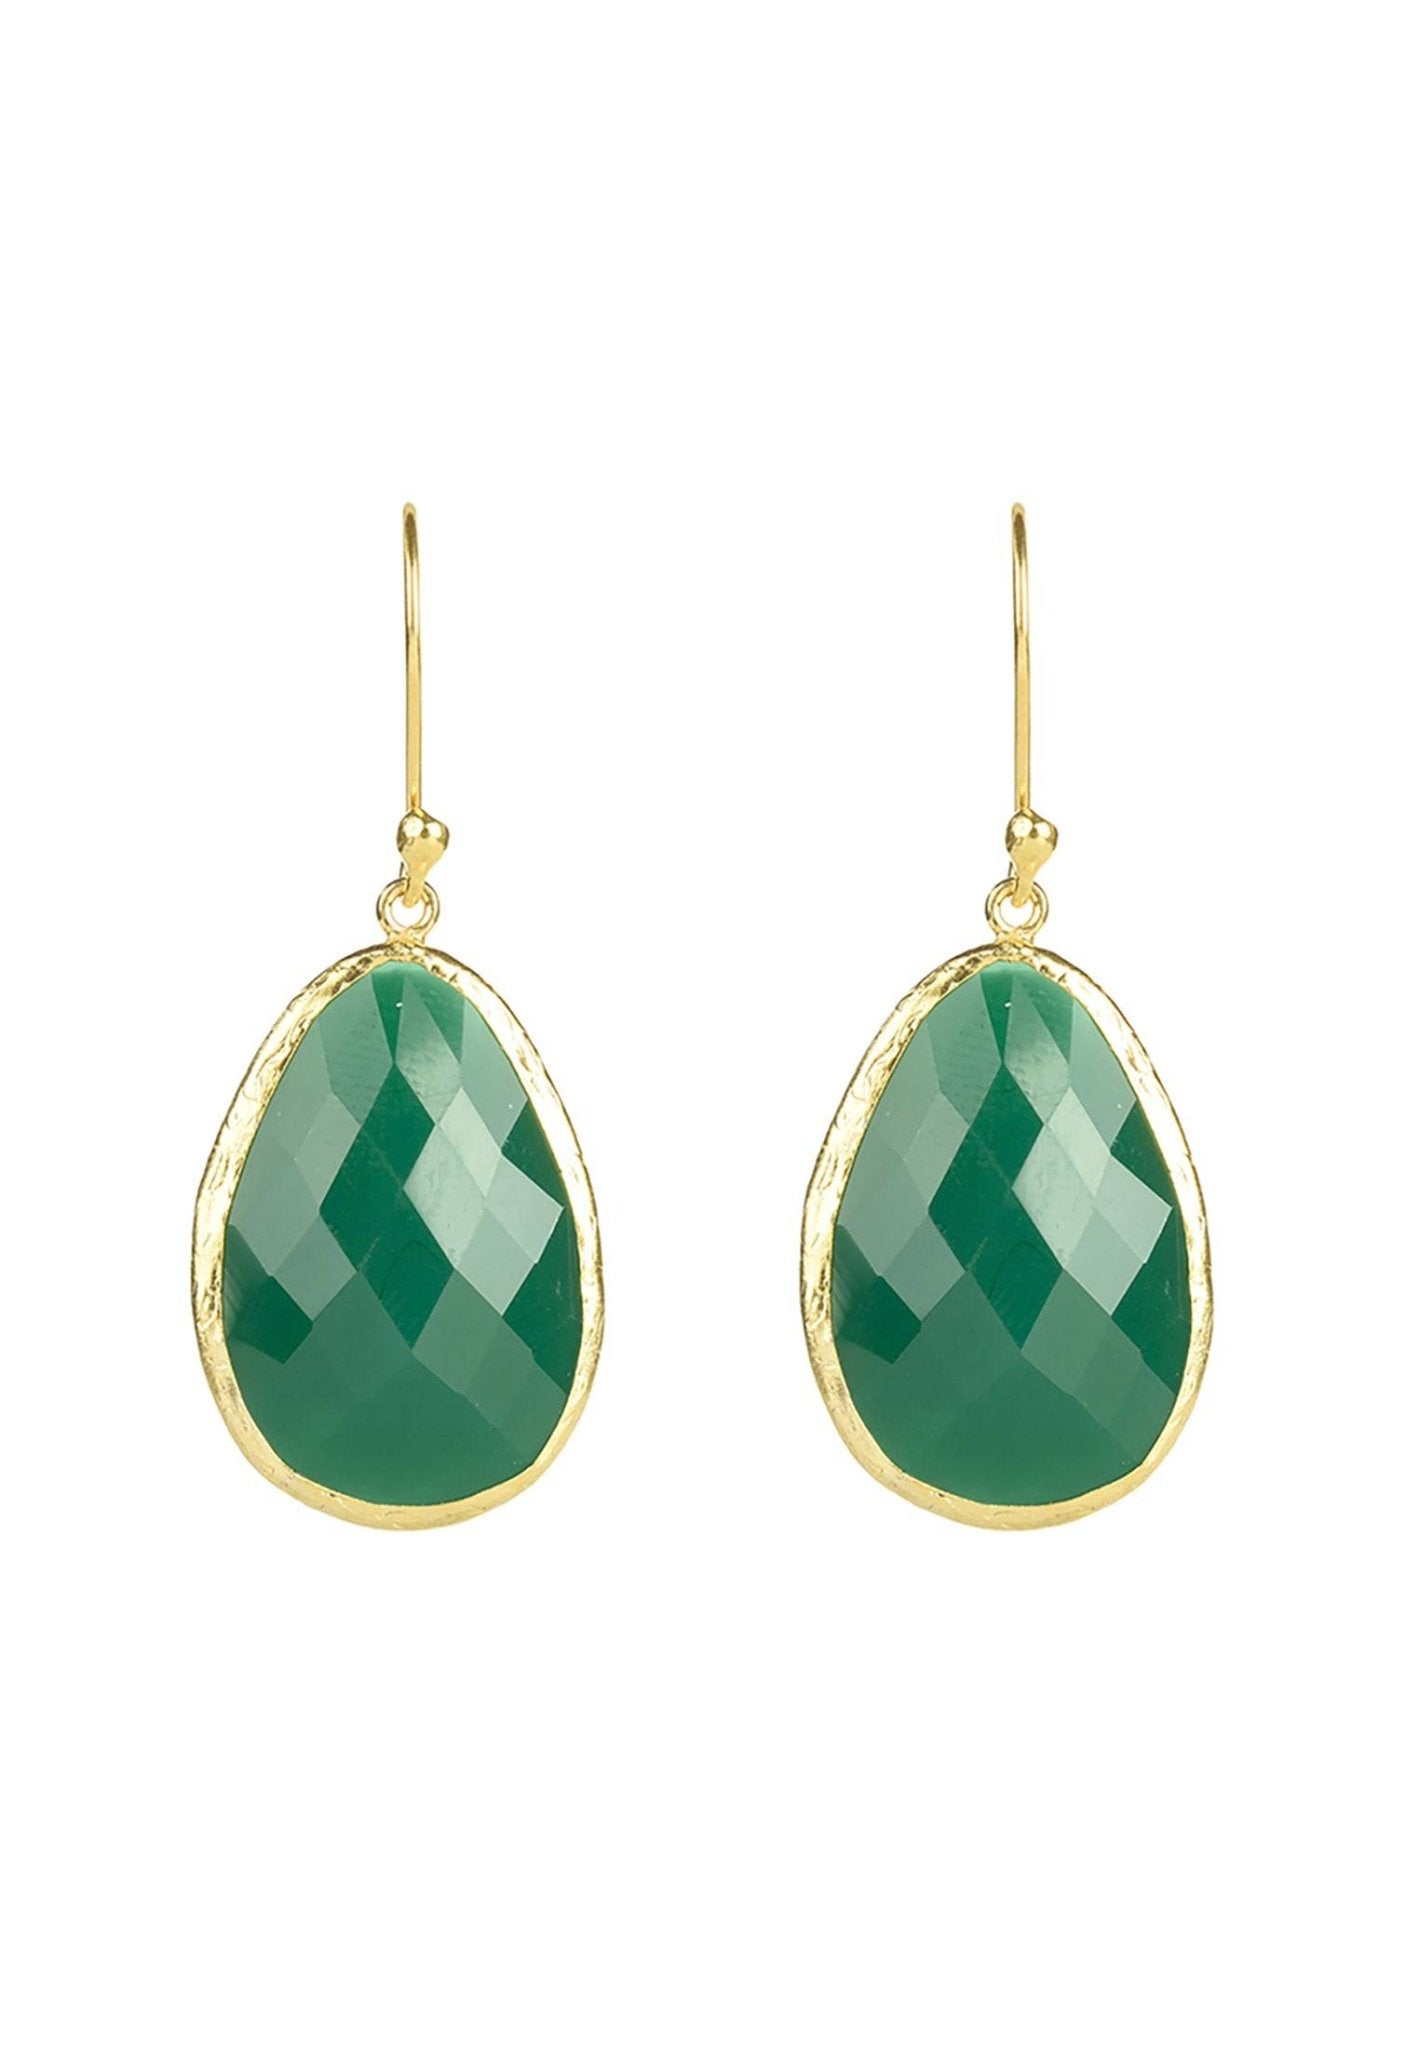 Single Drop Earrings Green Onyx Gold - LATELITA Earrings